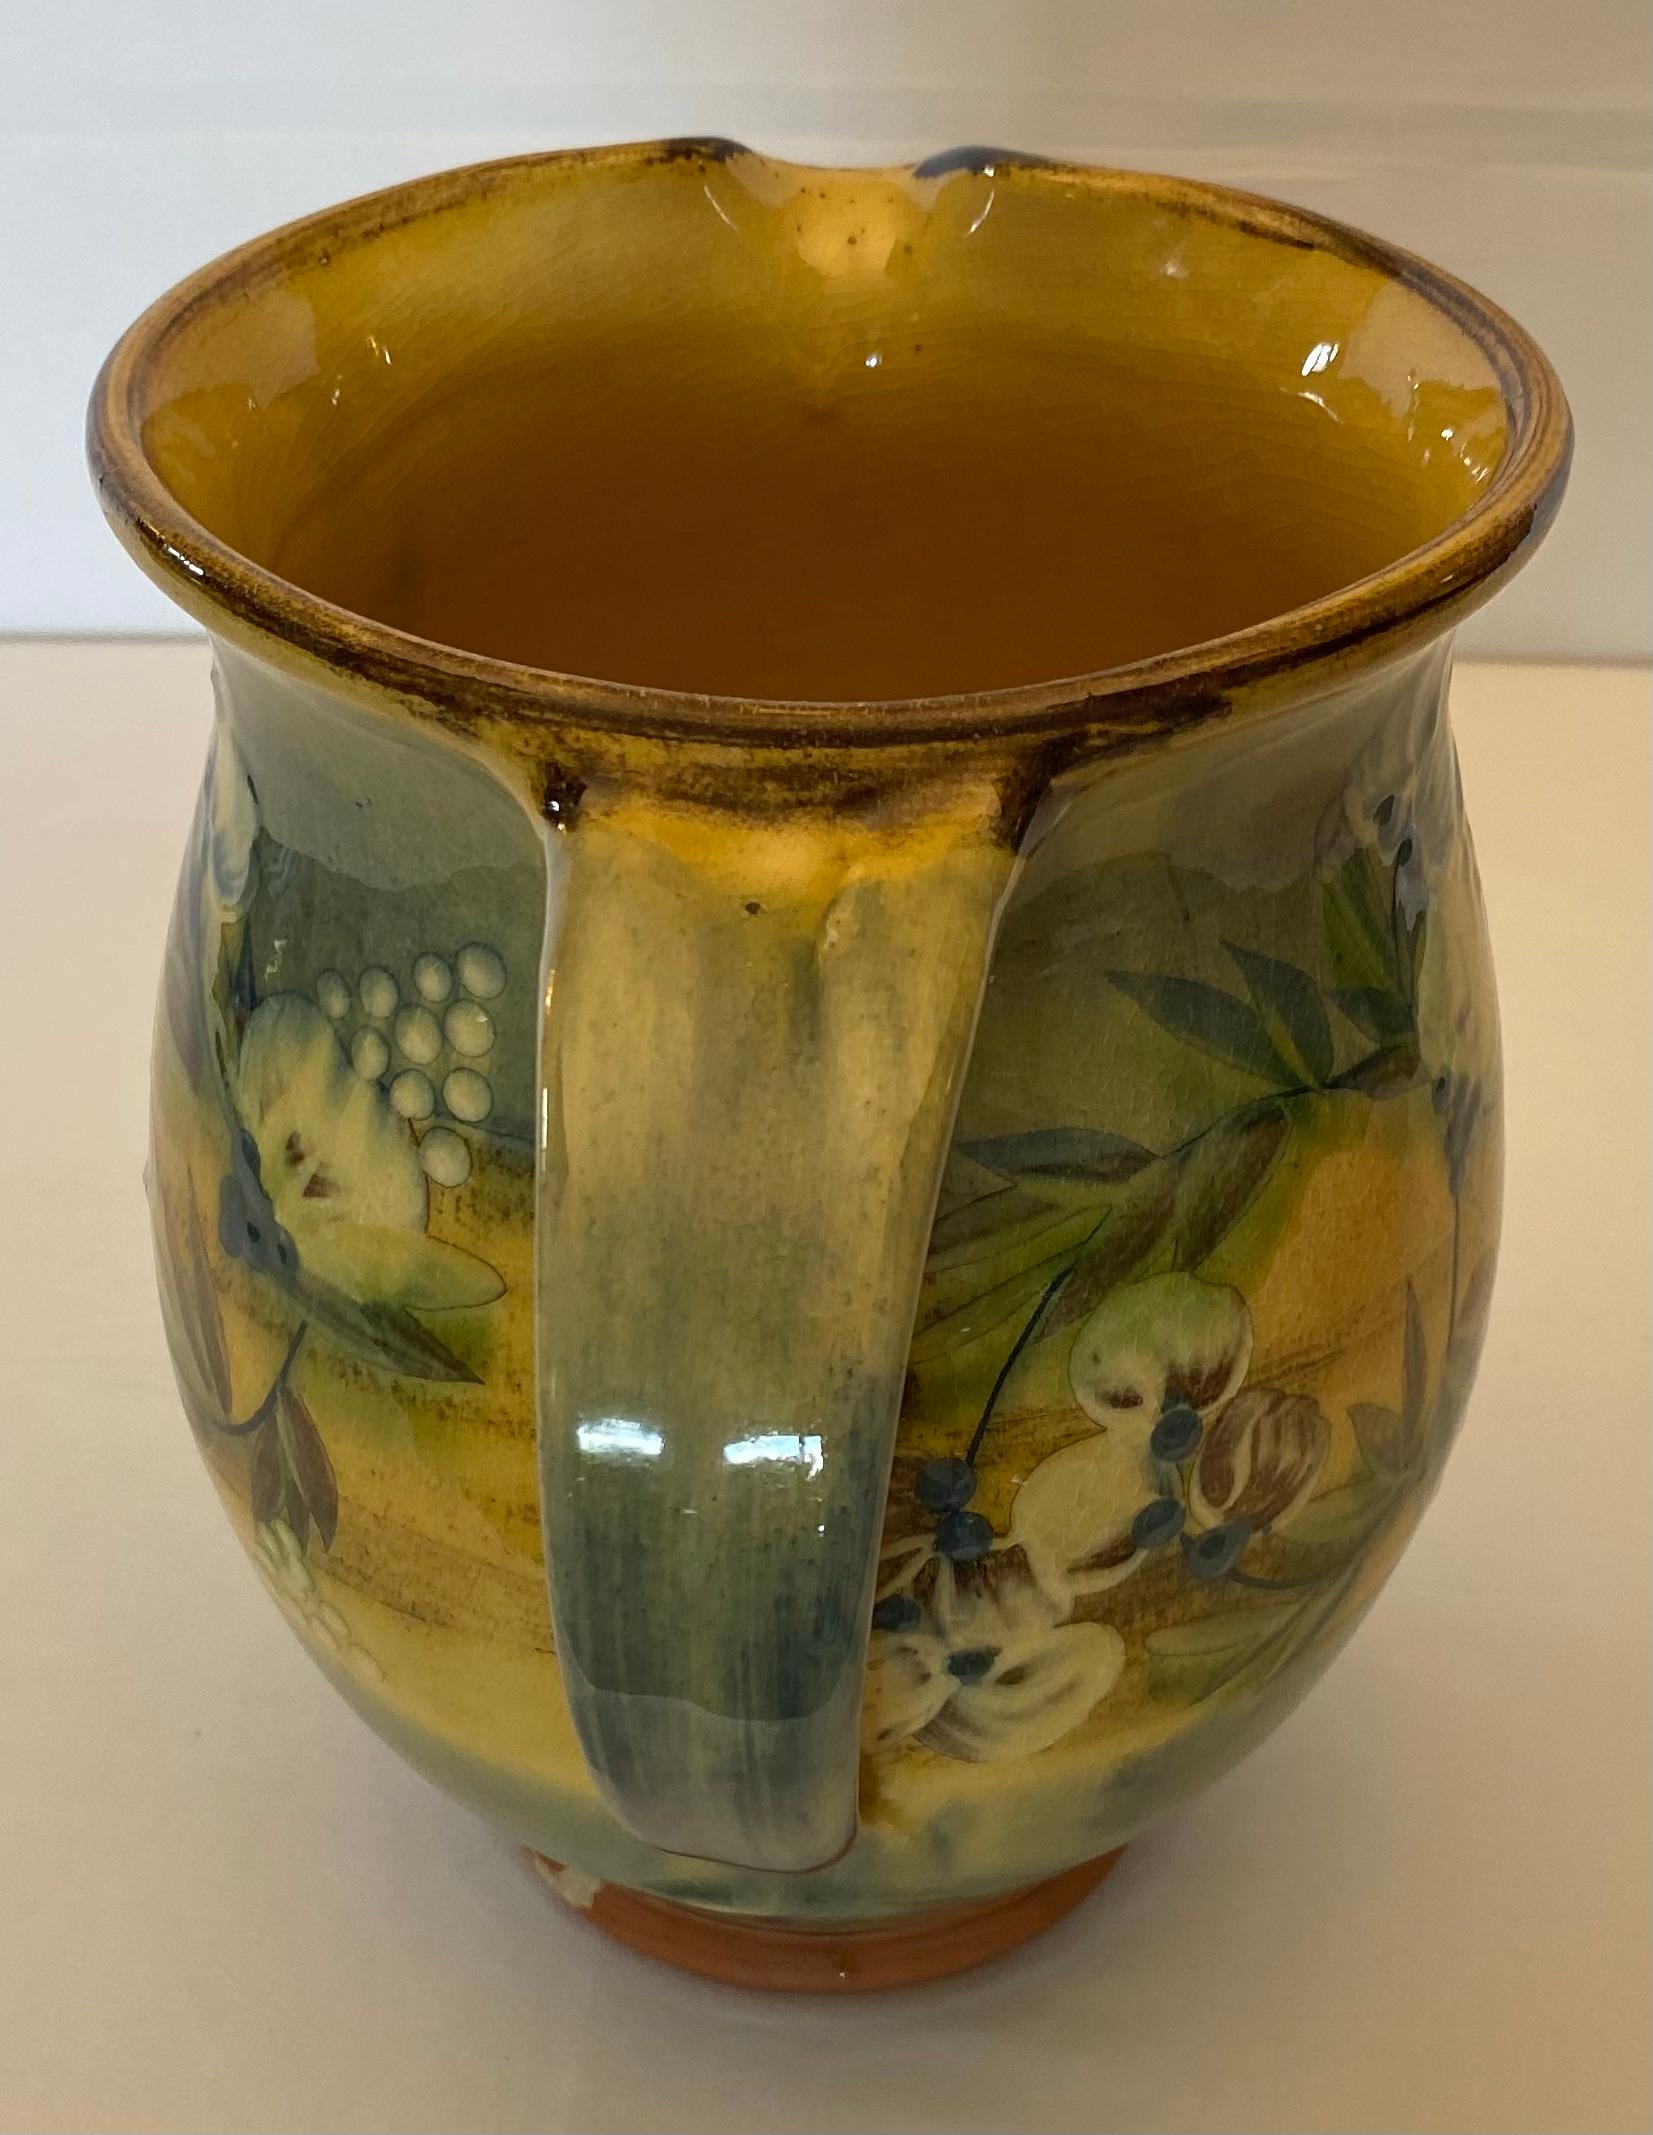 Vase-pichet en céramique de la région de Provence, fabriqué à la main. 

Ce vase-pichet en céramique française est très bien réalisé avec de l'argile de la région. Peinte à la main puis émaillée, cette pièce est particulièrement agréable à